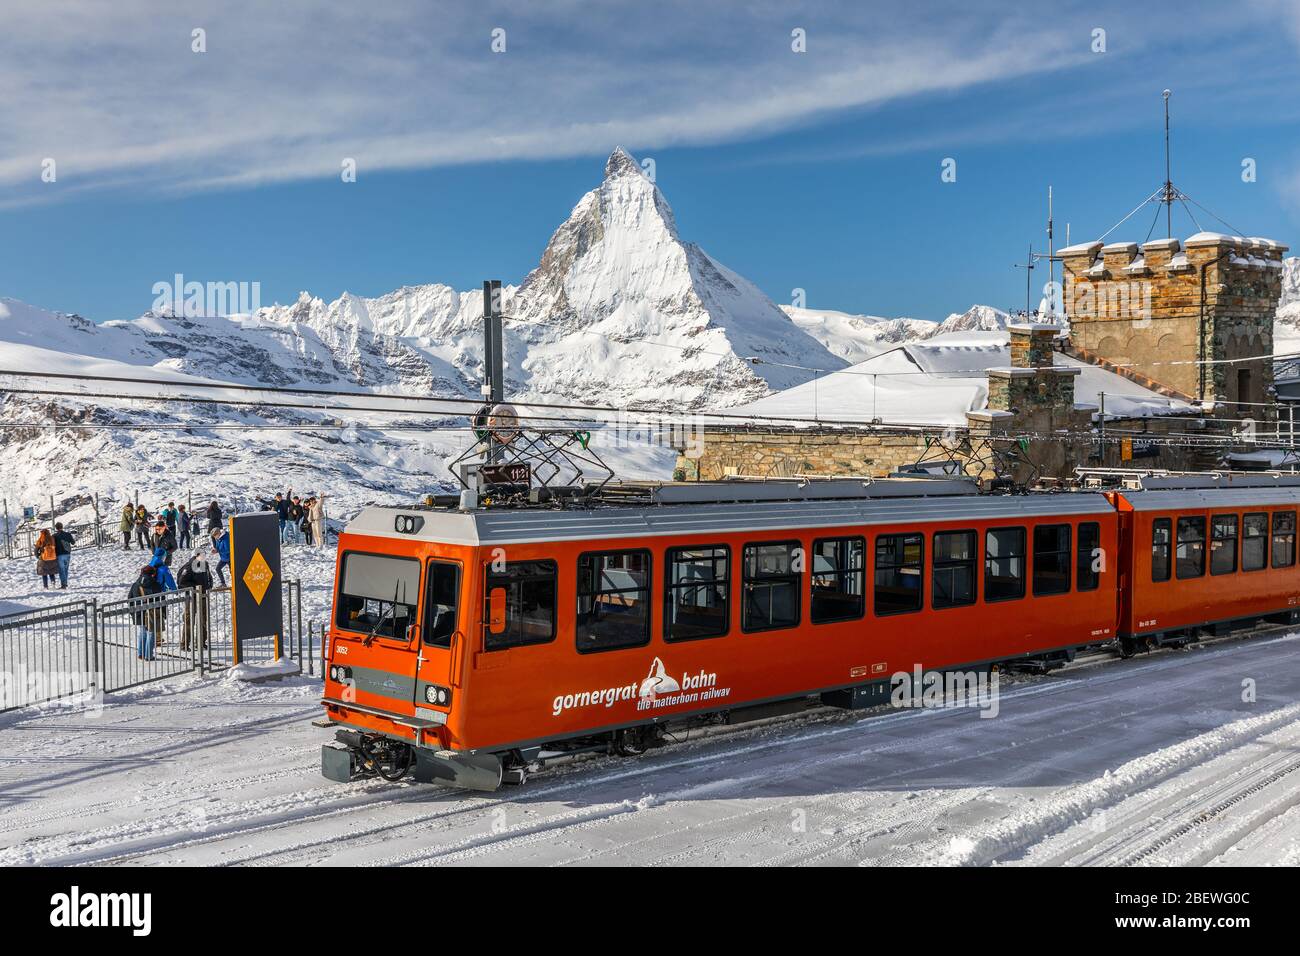 Gornergrat, Zermatt, Switzerland - November 12, 2019: Red cable car train  on snowy railway at summit station with background of Matterhorn summit in  w Stock Photo - Alamy